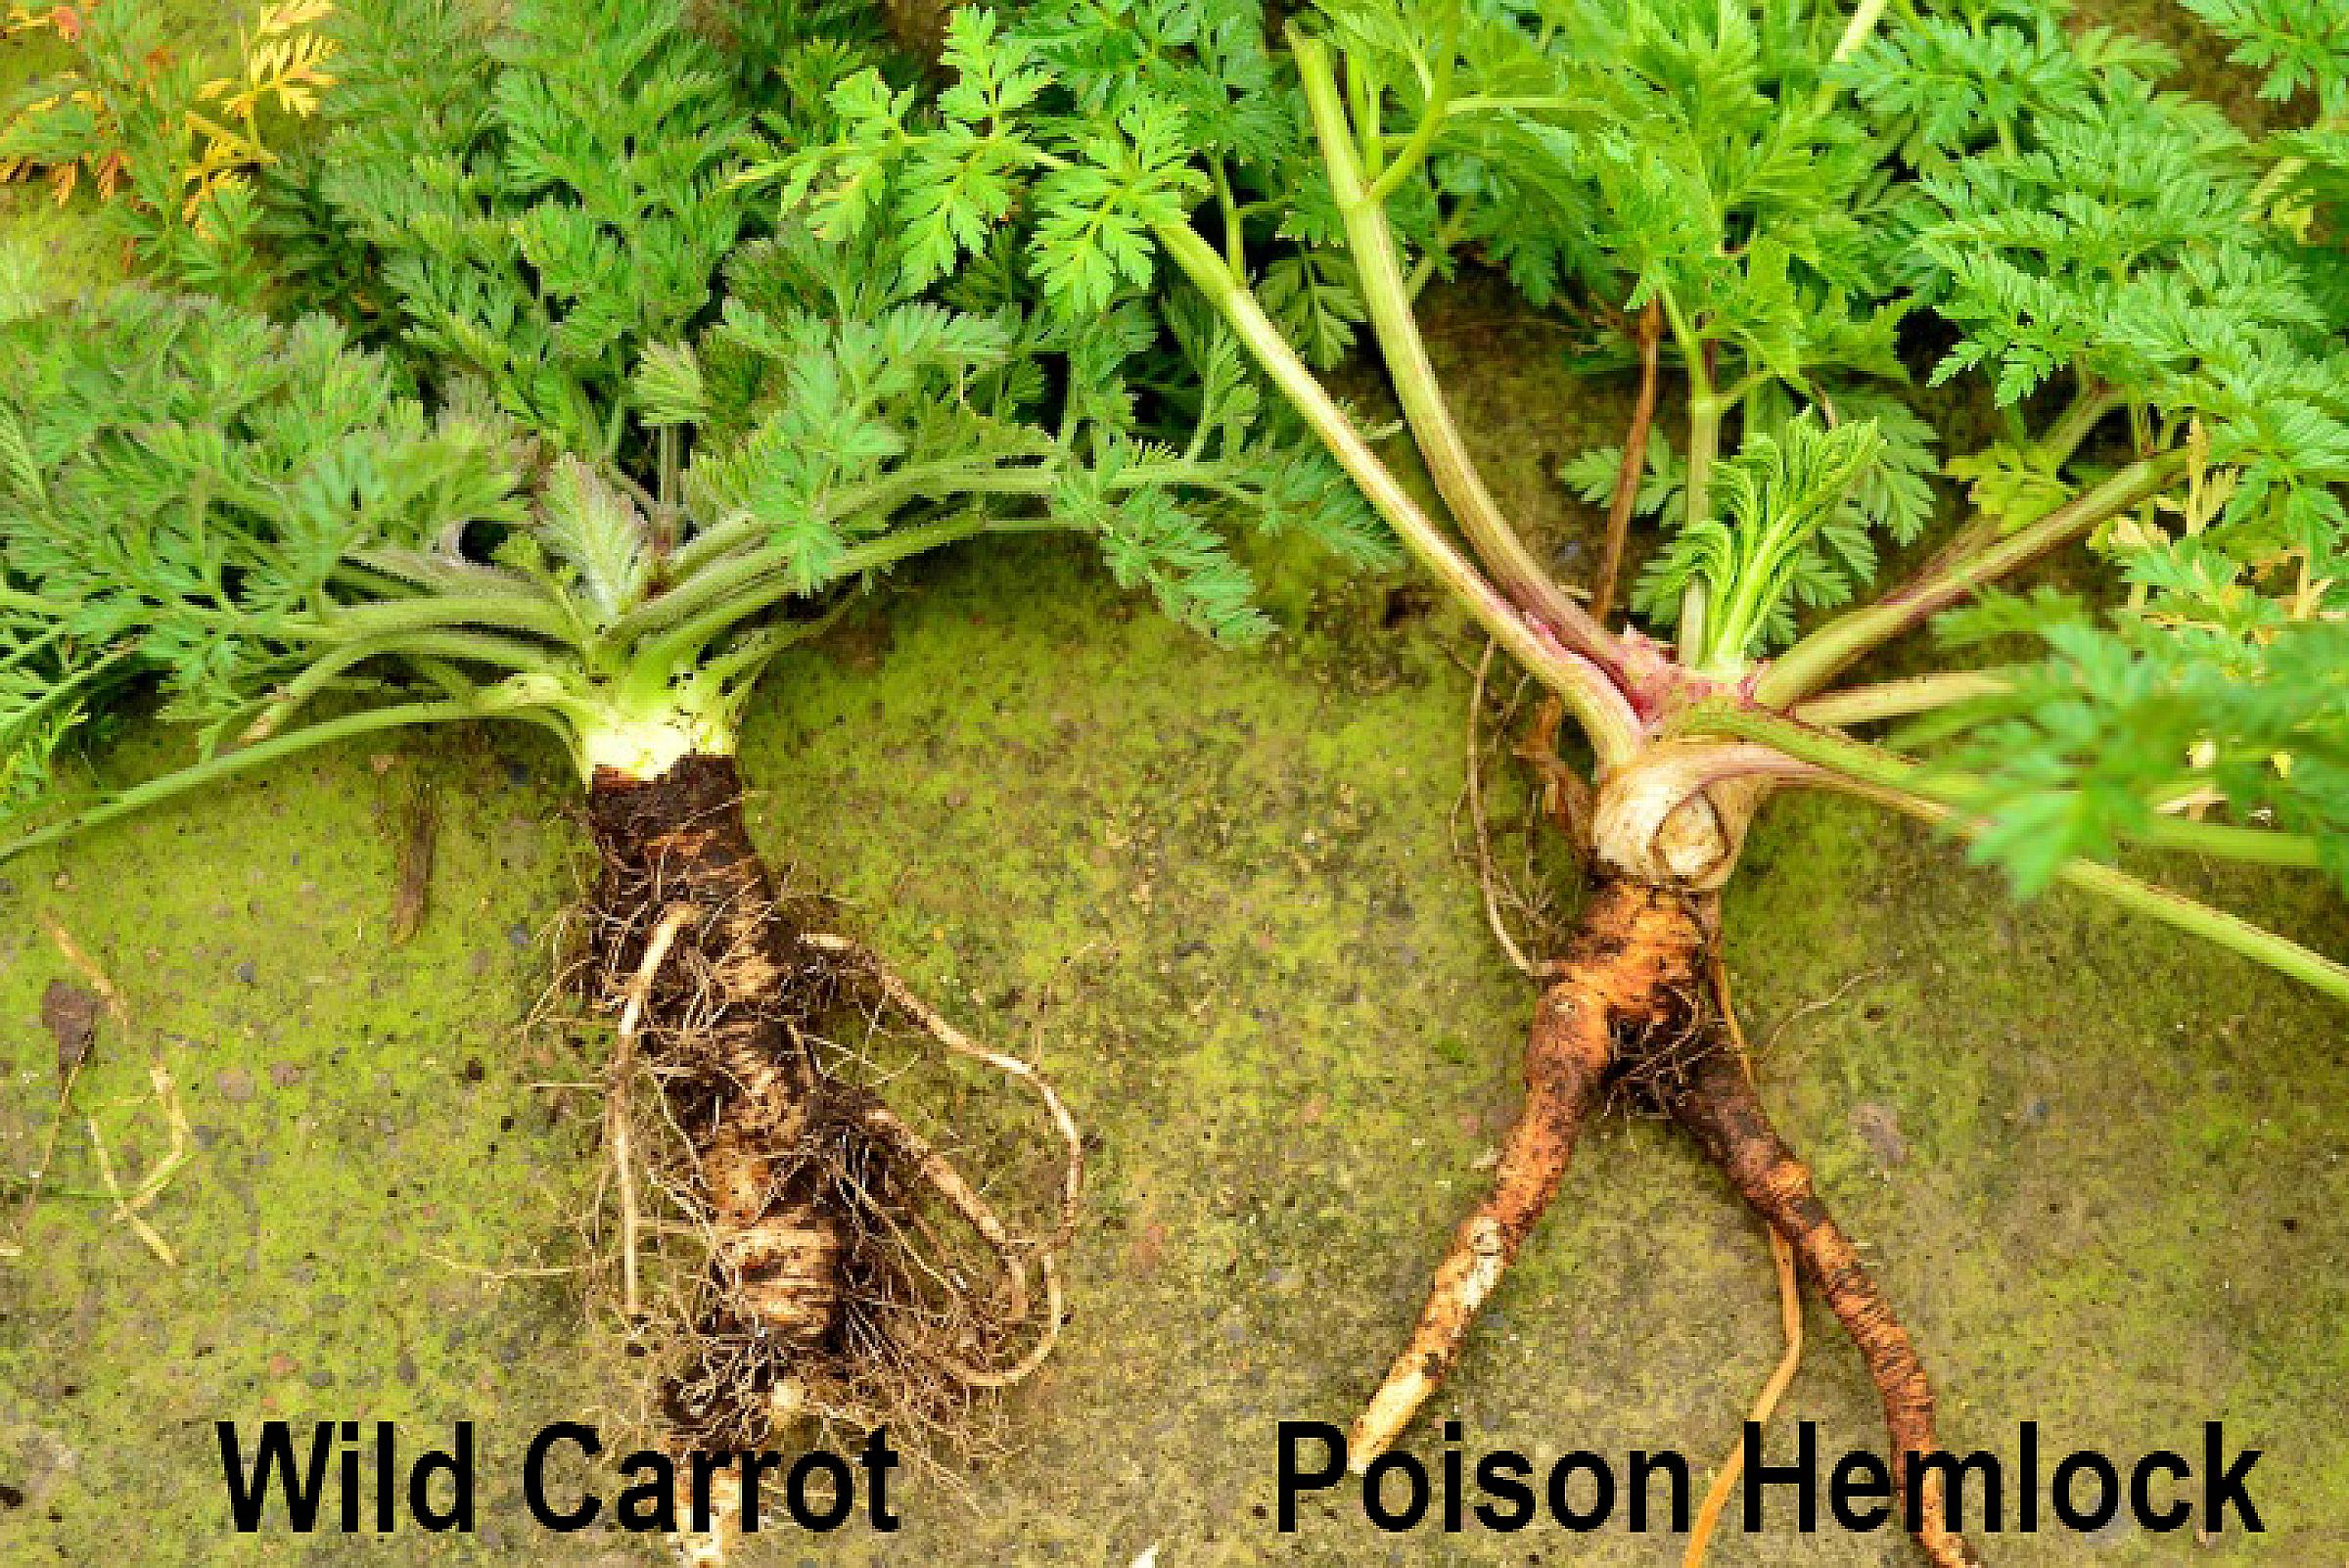 Wild Carrot left vs Poison Hemlock right root comparison